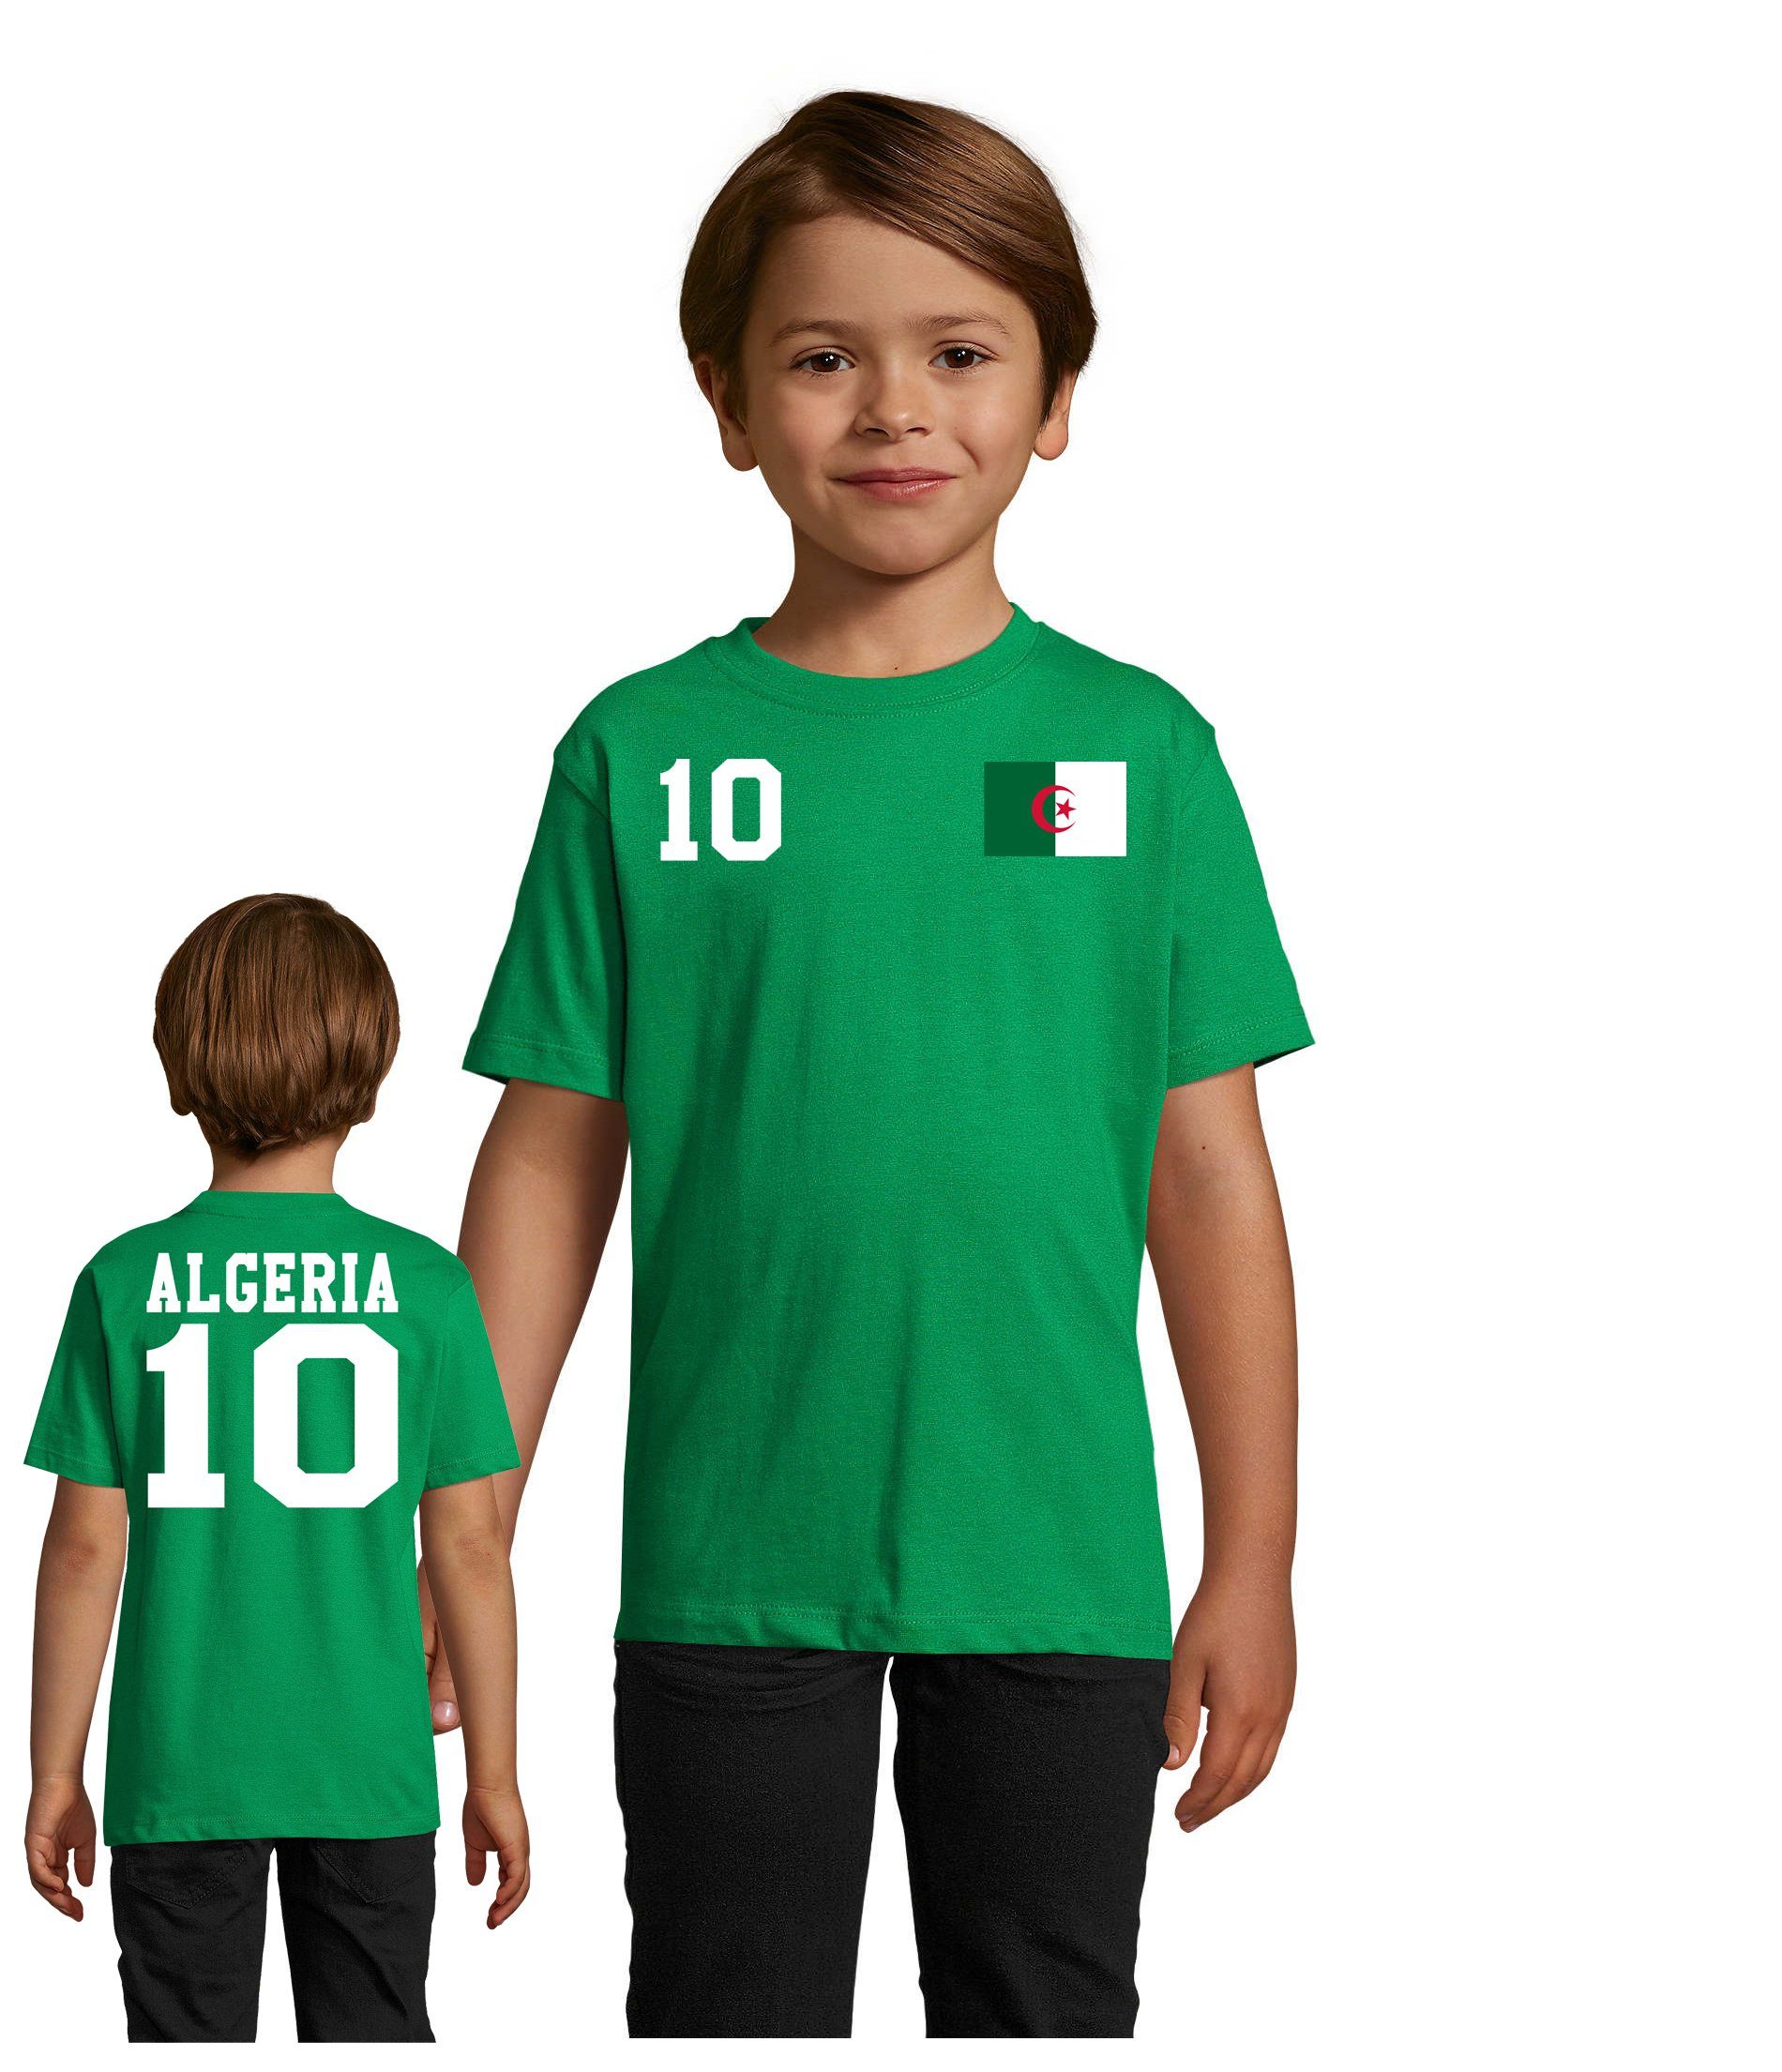 Blondie & Brownie T-Shirt Kinder Algerien Algeria Sport Trikot Fußball Weltmeister WM Afrika